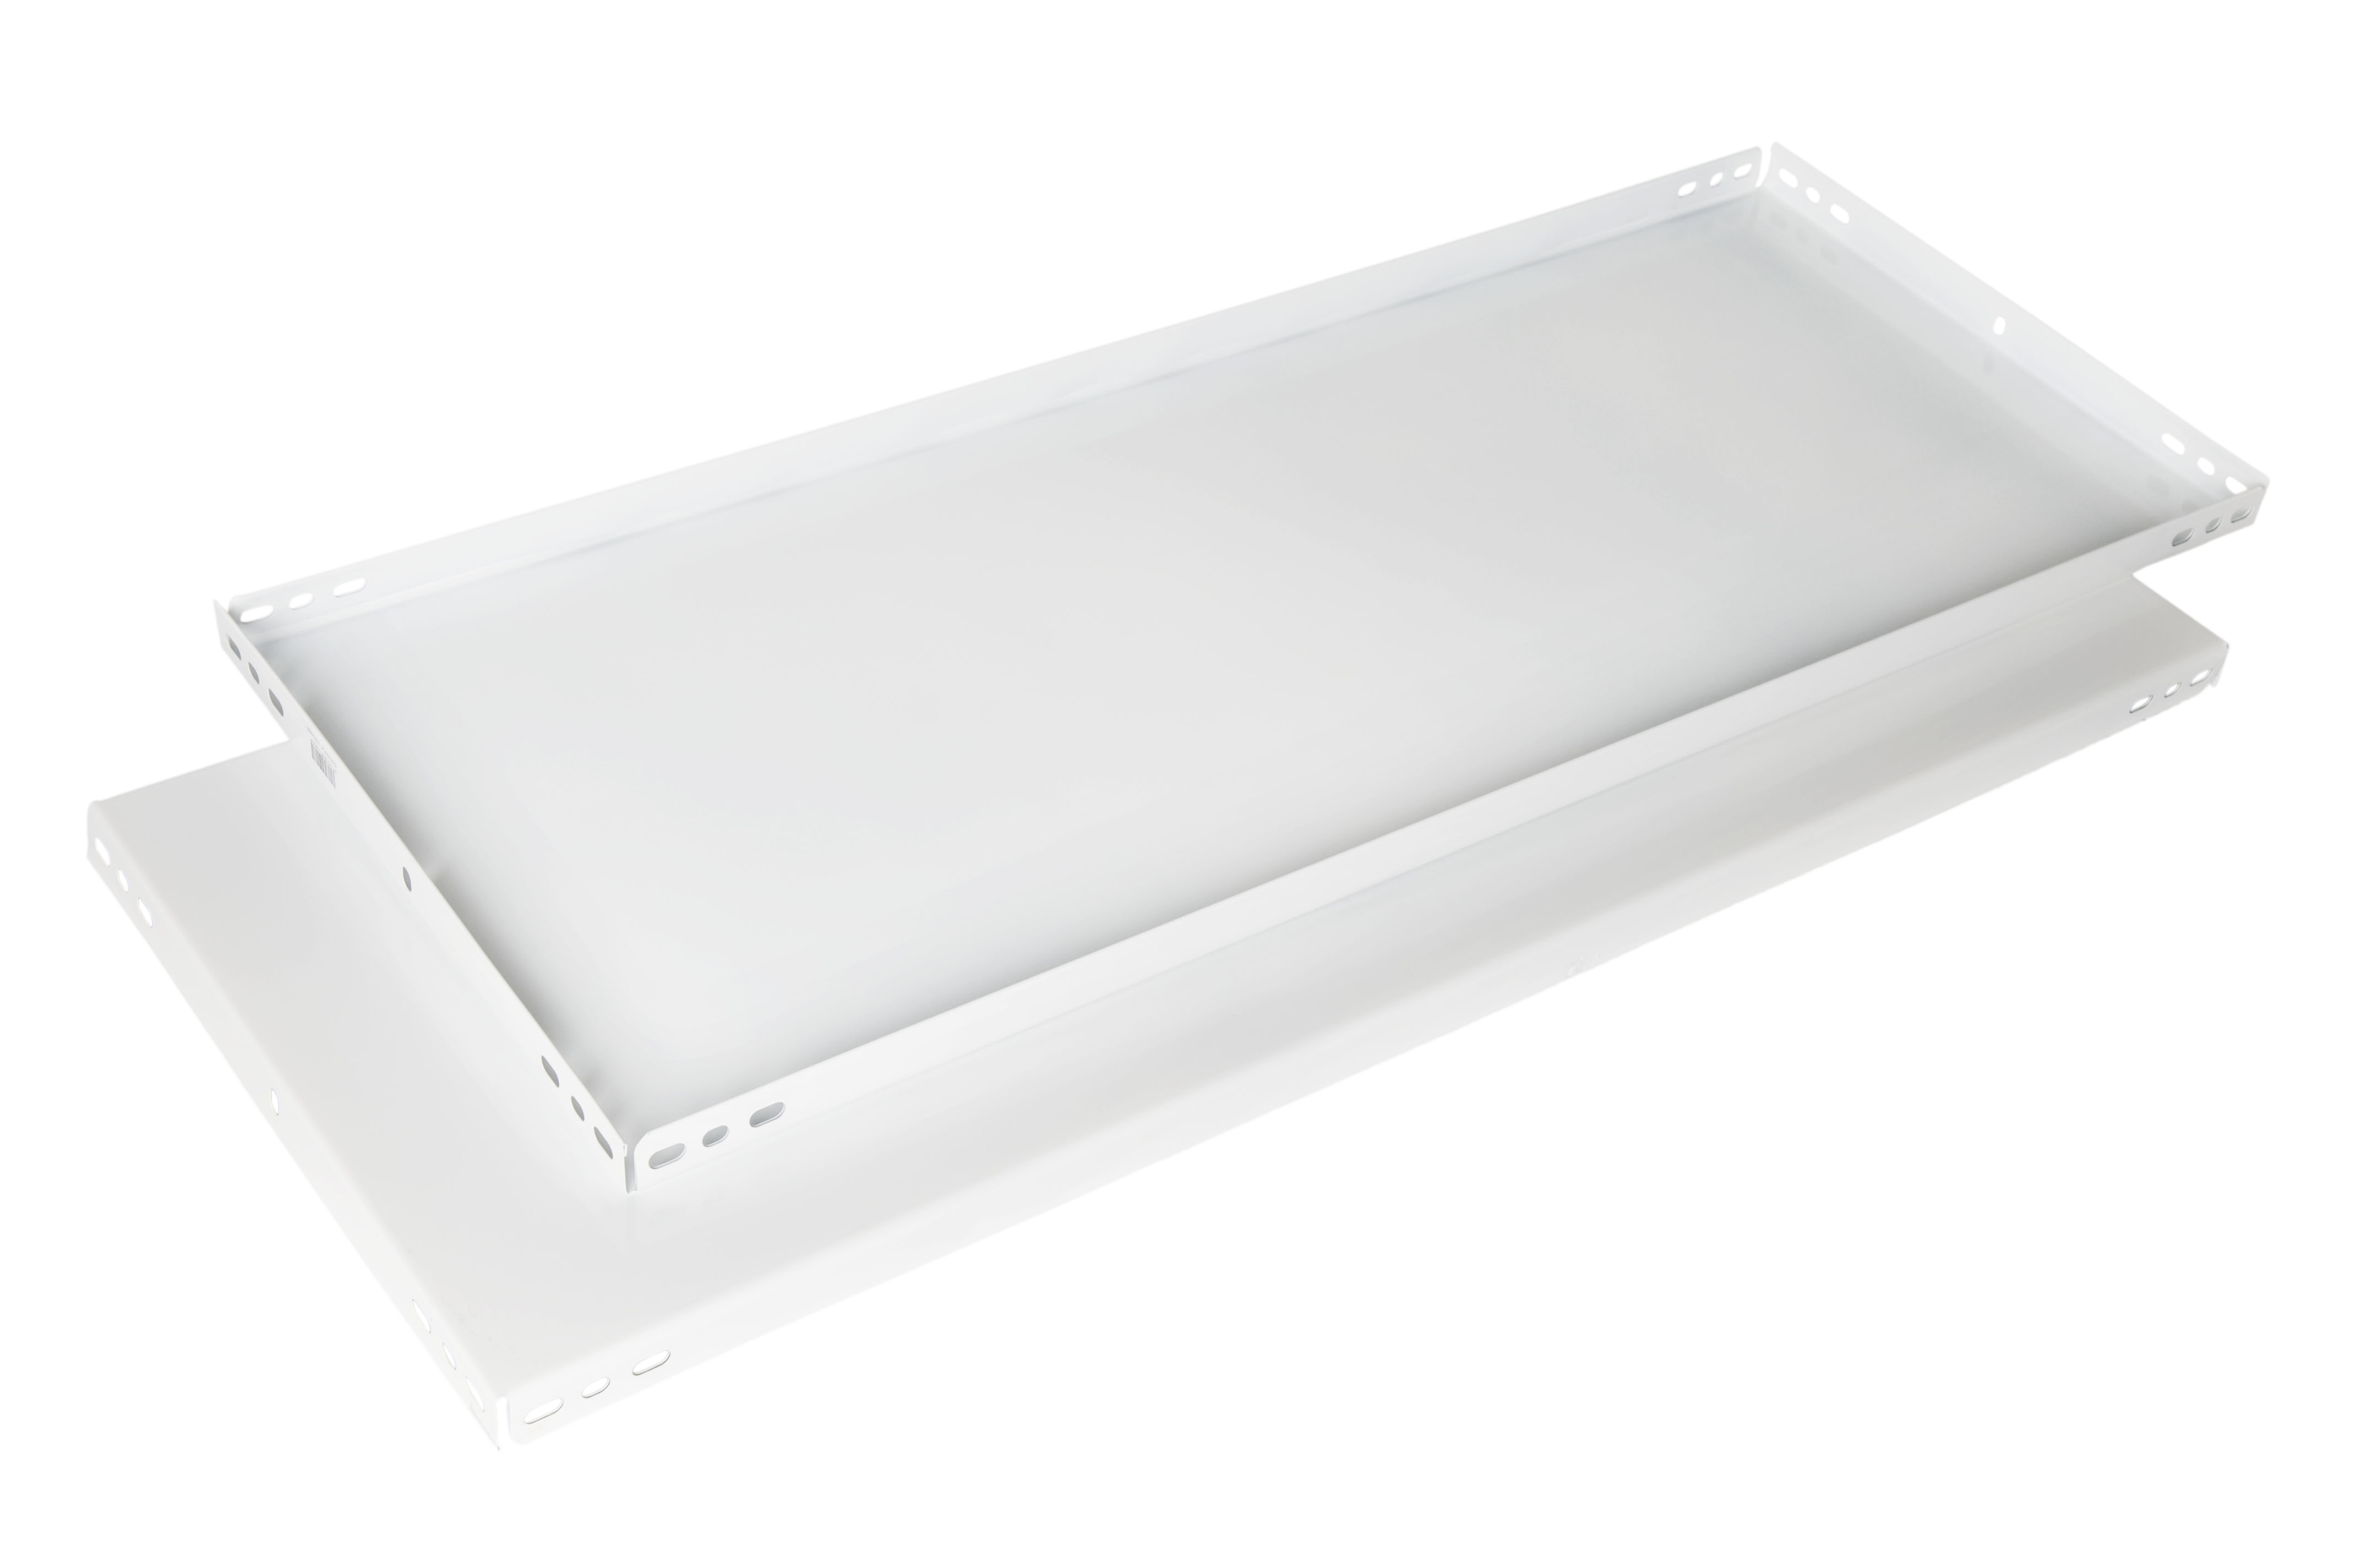 Balda recta para sistema de estantes de acero blanco de 90x50cm